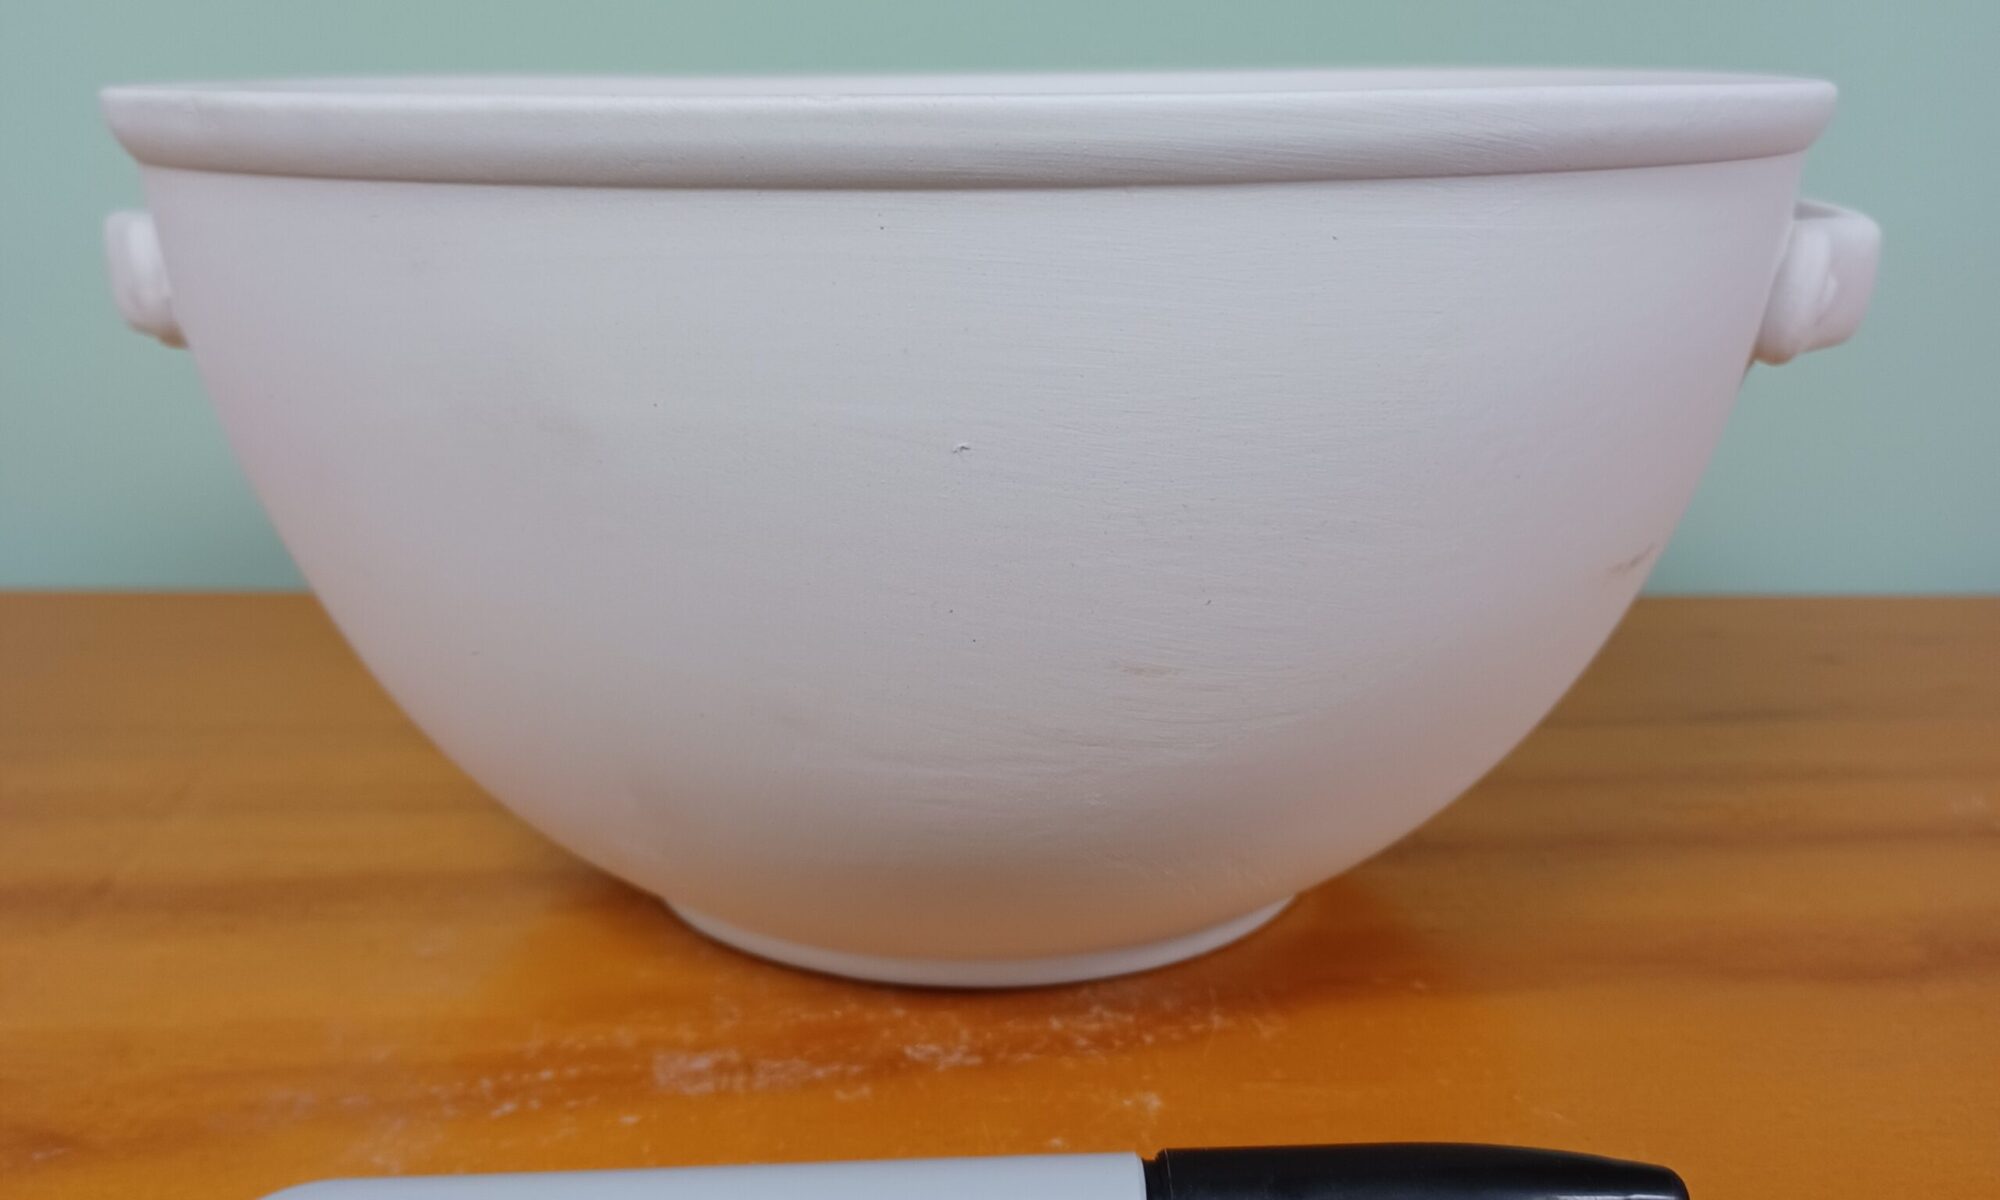 Kitchen Bowl